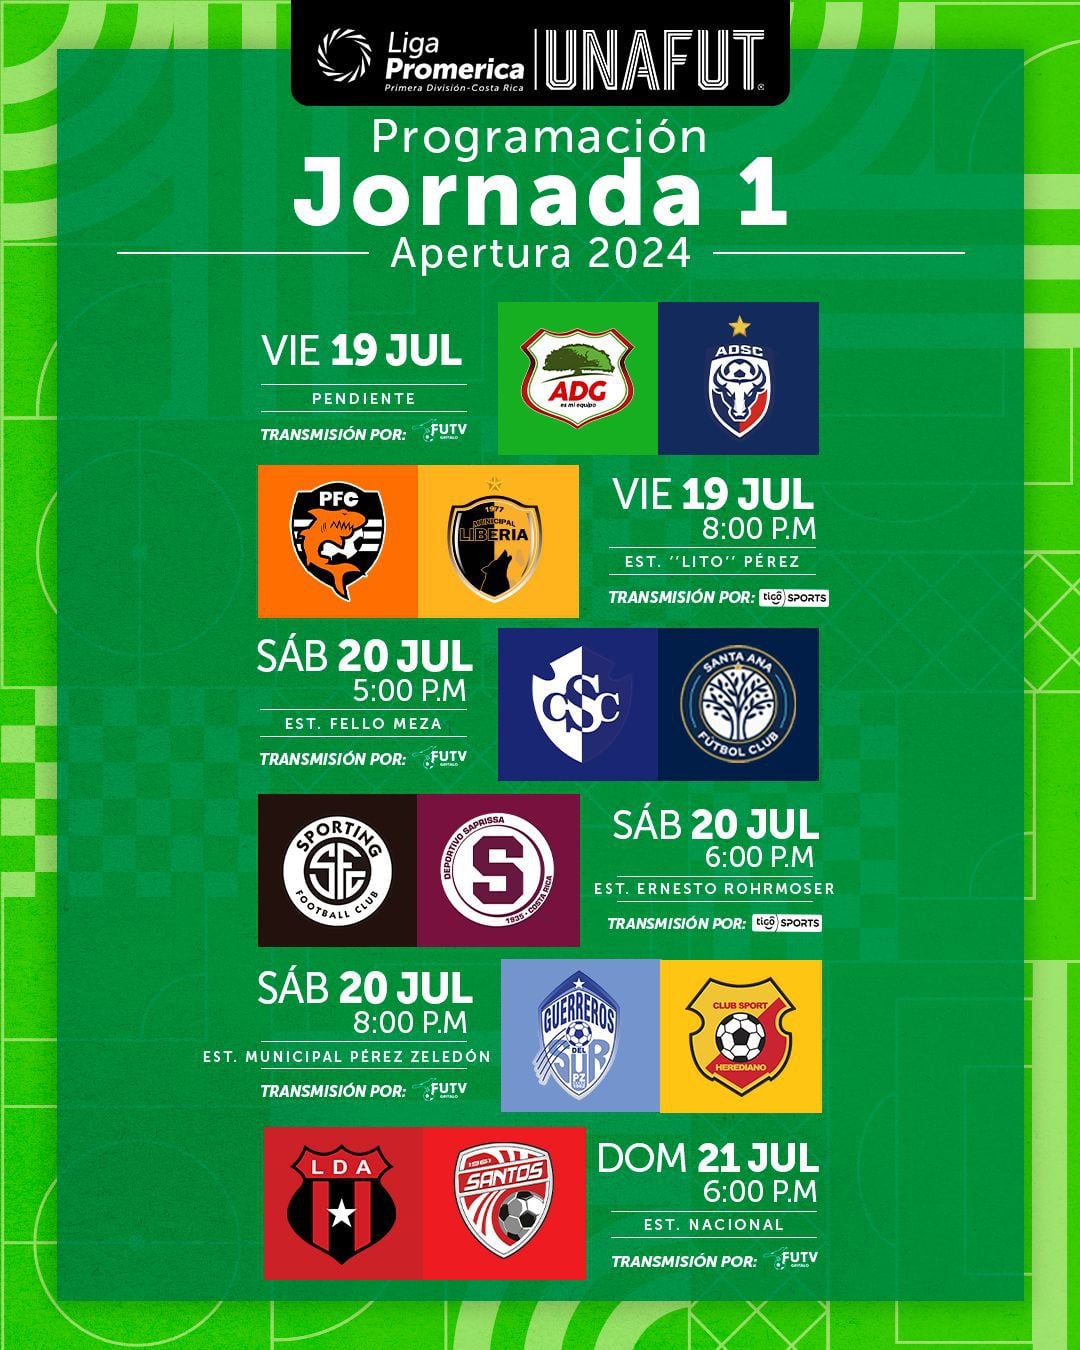 La Unafut informó de los horarios y canales que transmitirán los partidos de la jornada 1 del Torneo de Apertura 2024.